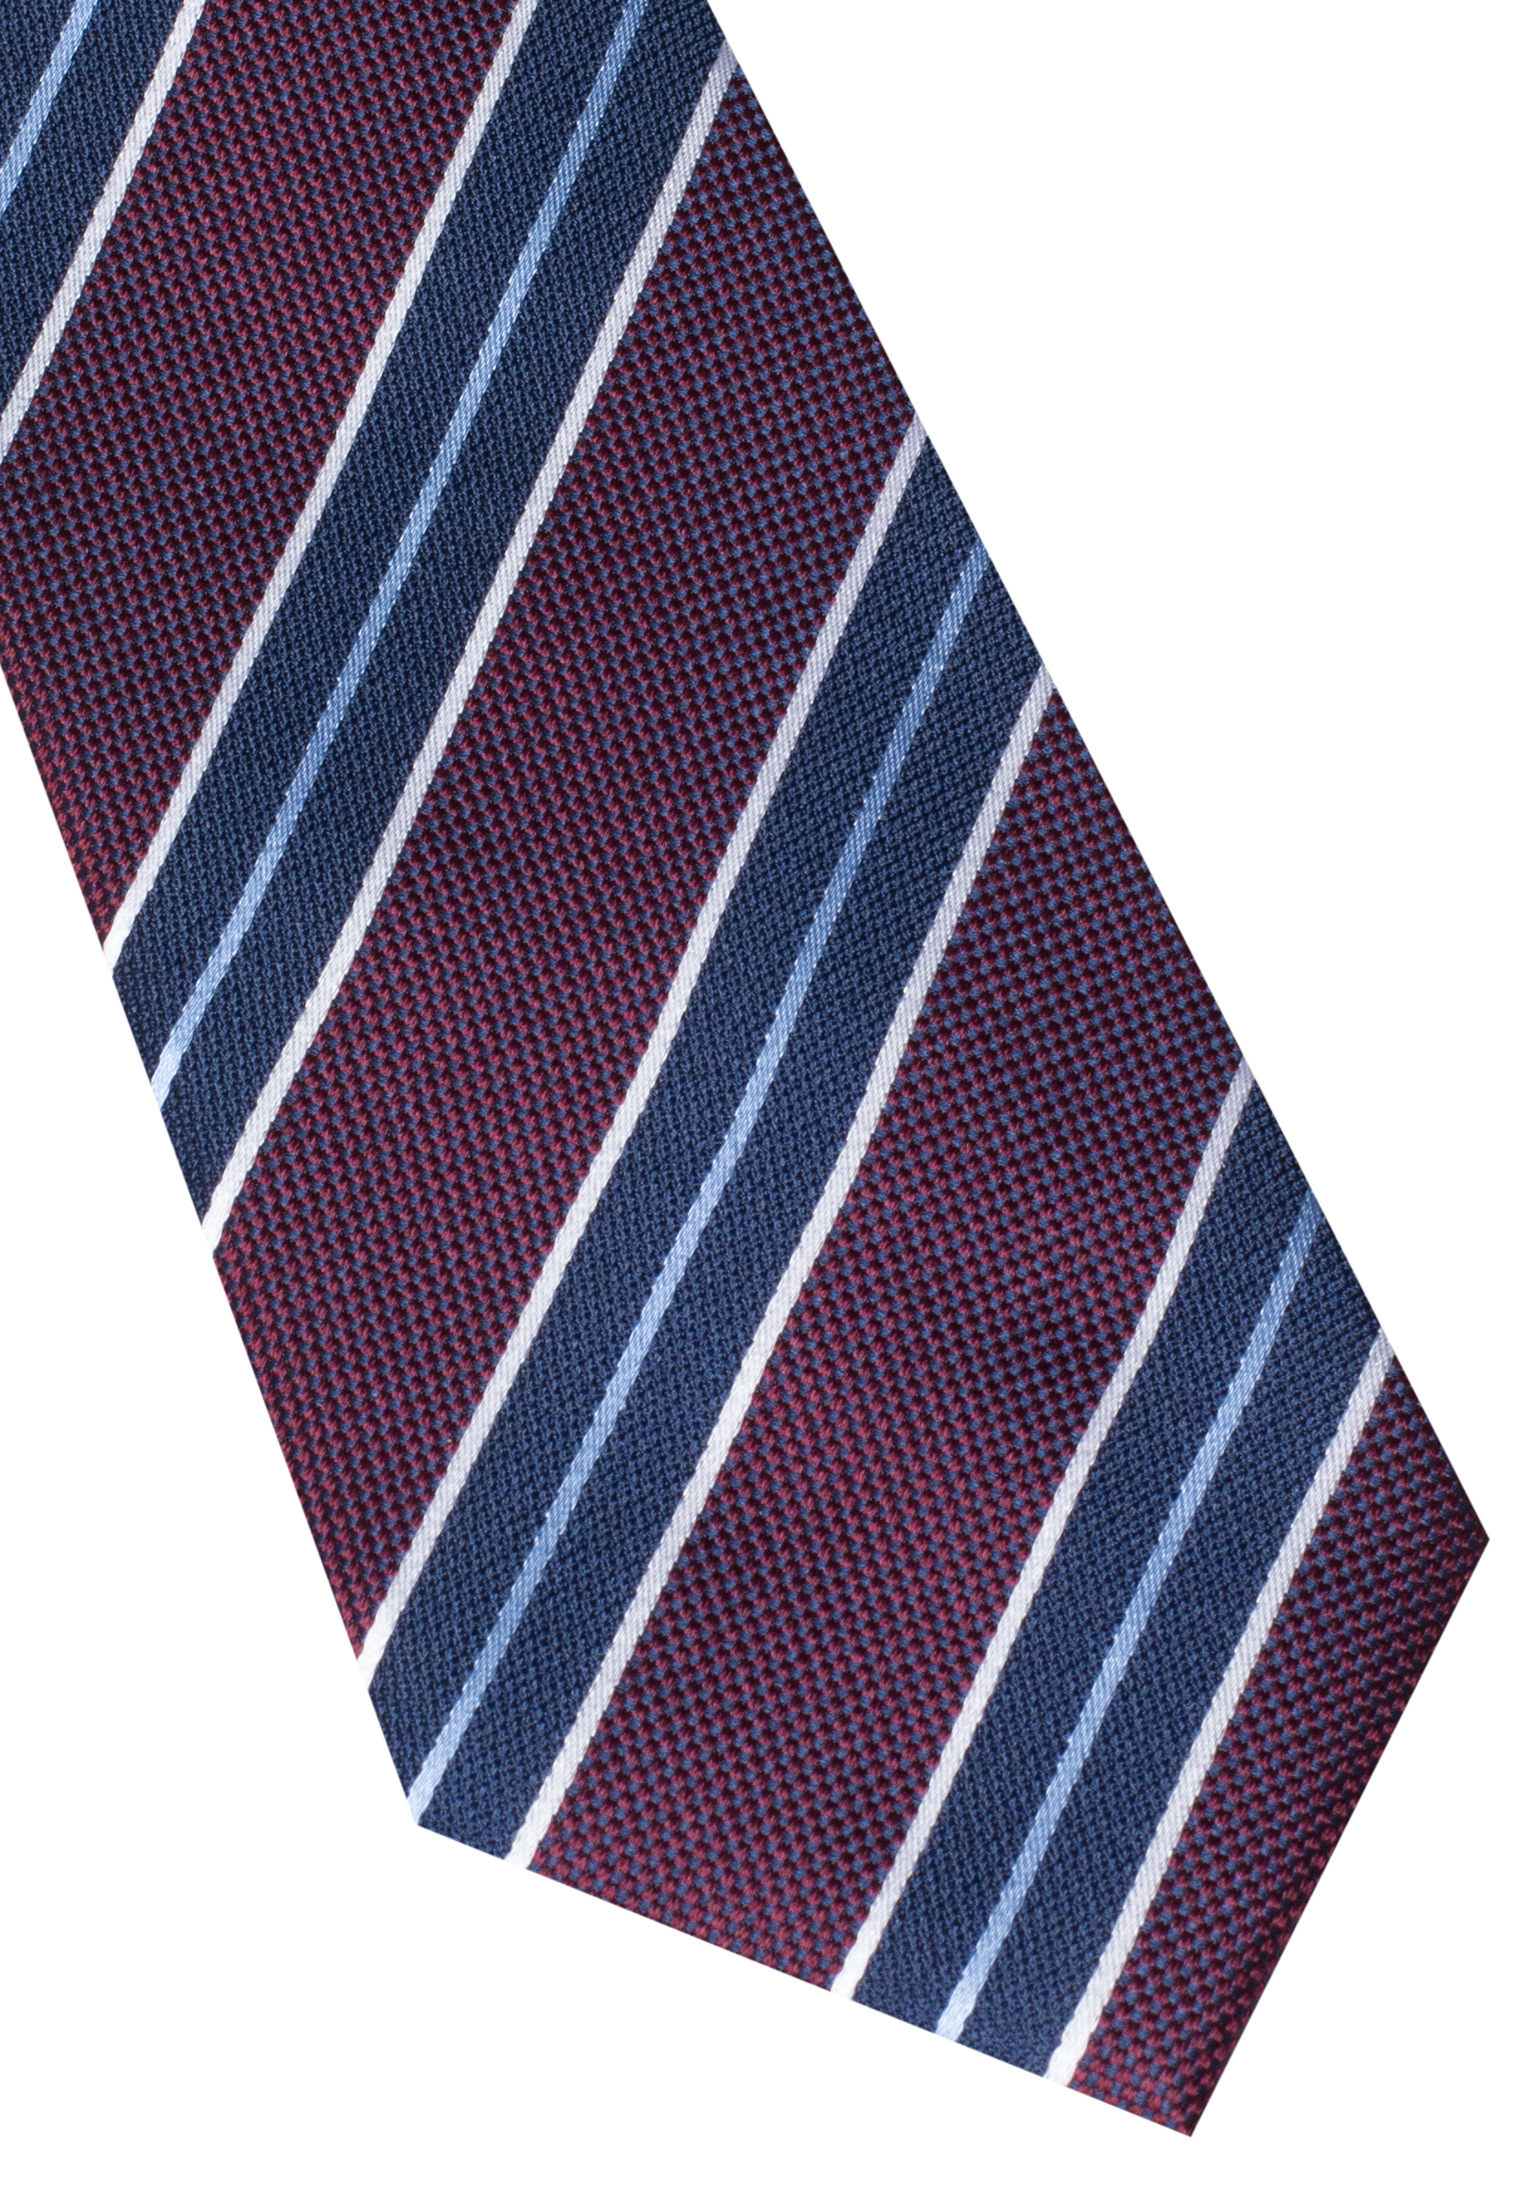 Tie in bordeaux striped